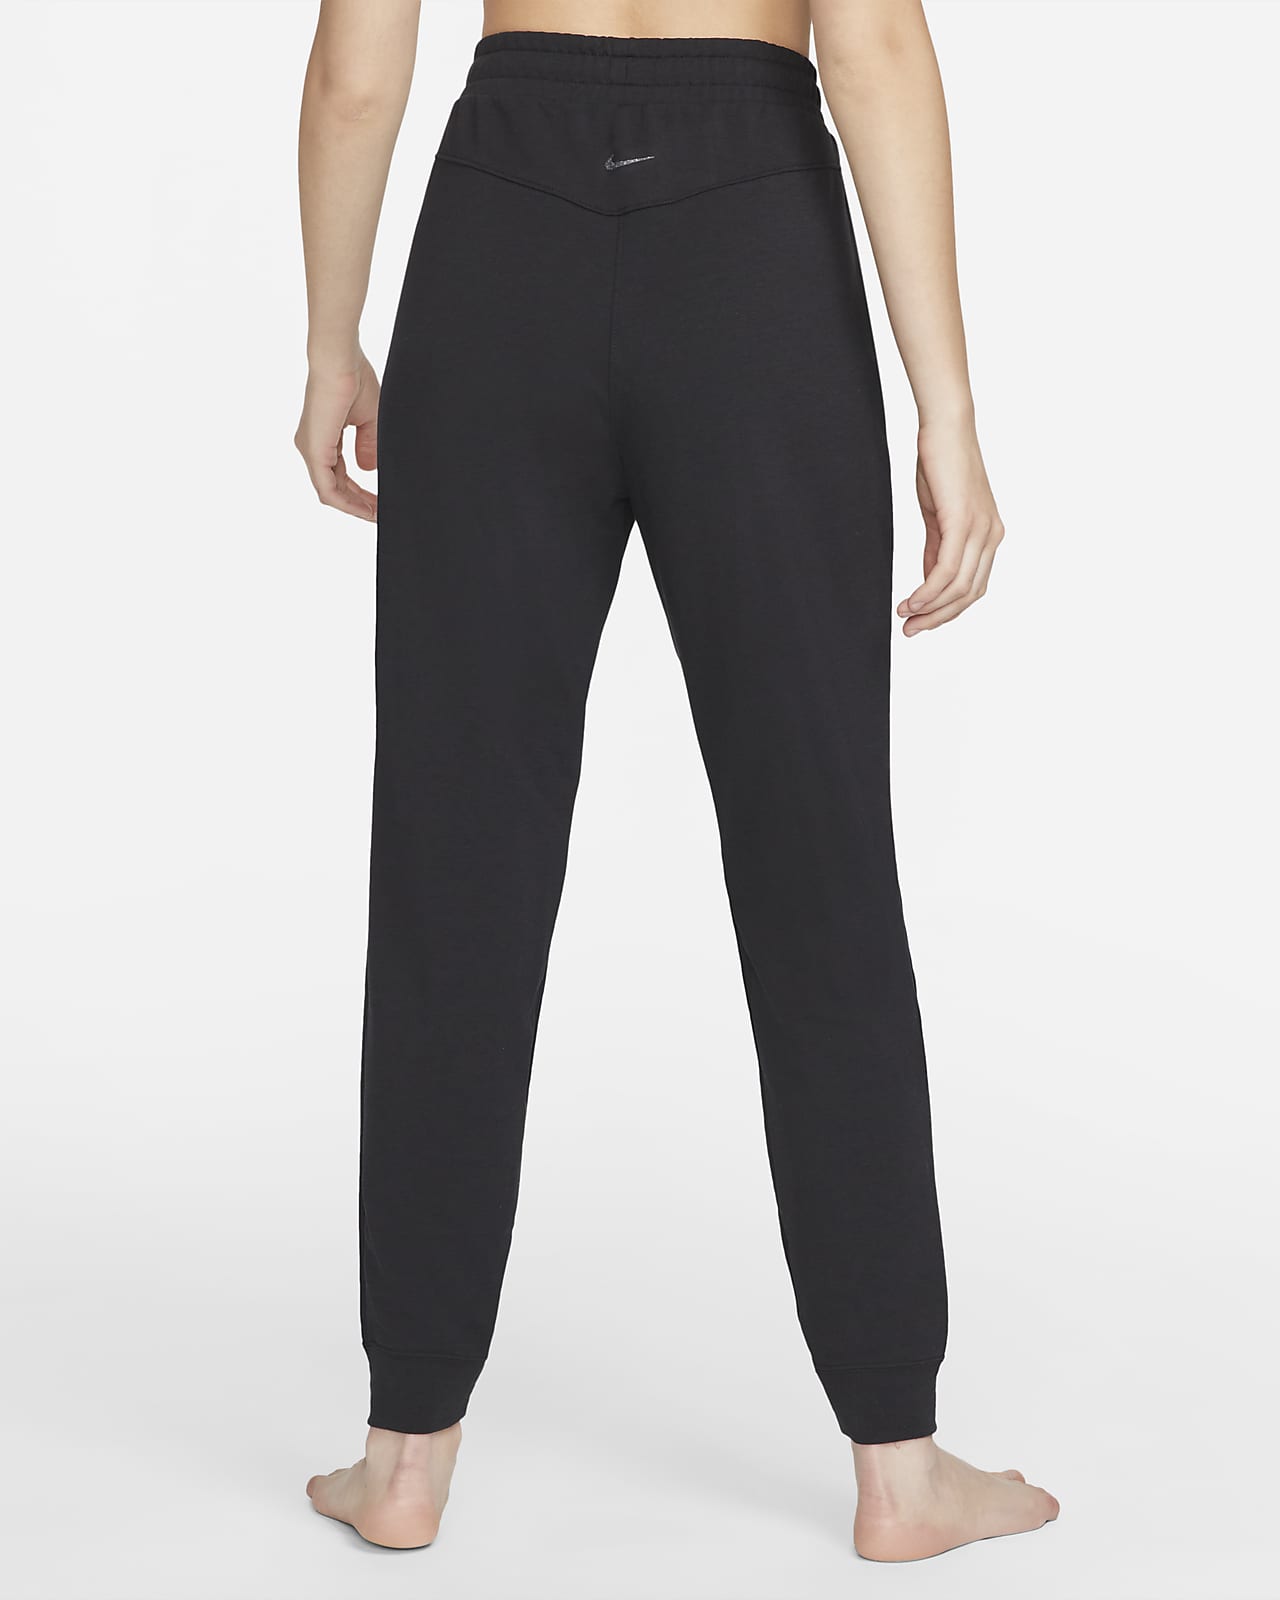 Women's Nike Dri-Fit Yoga Pants size xs